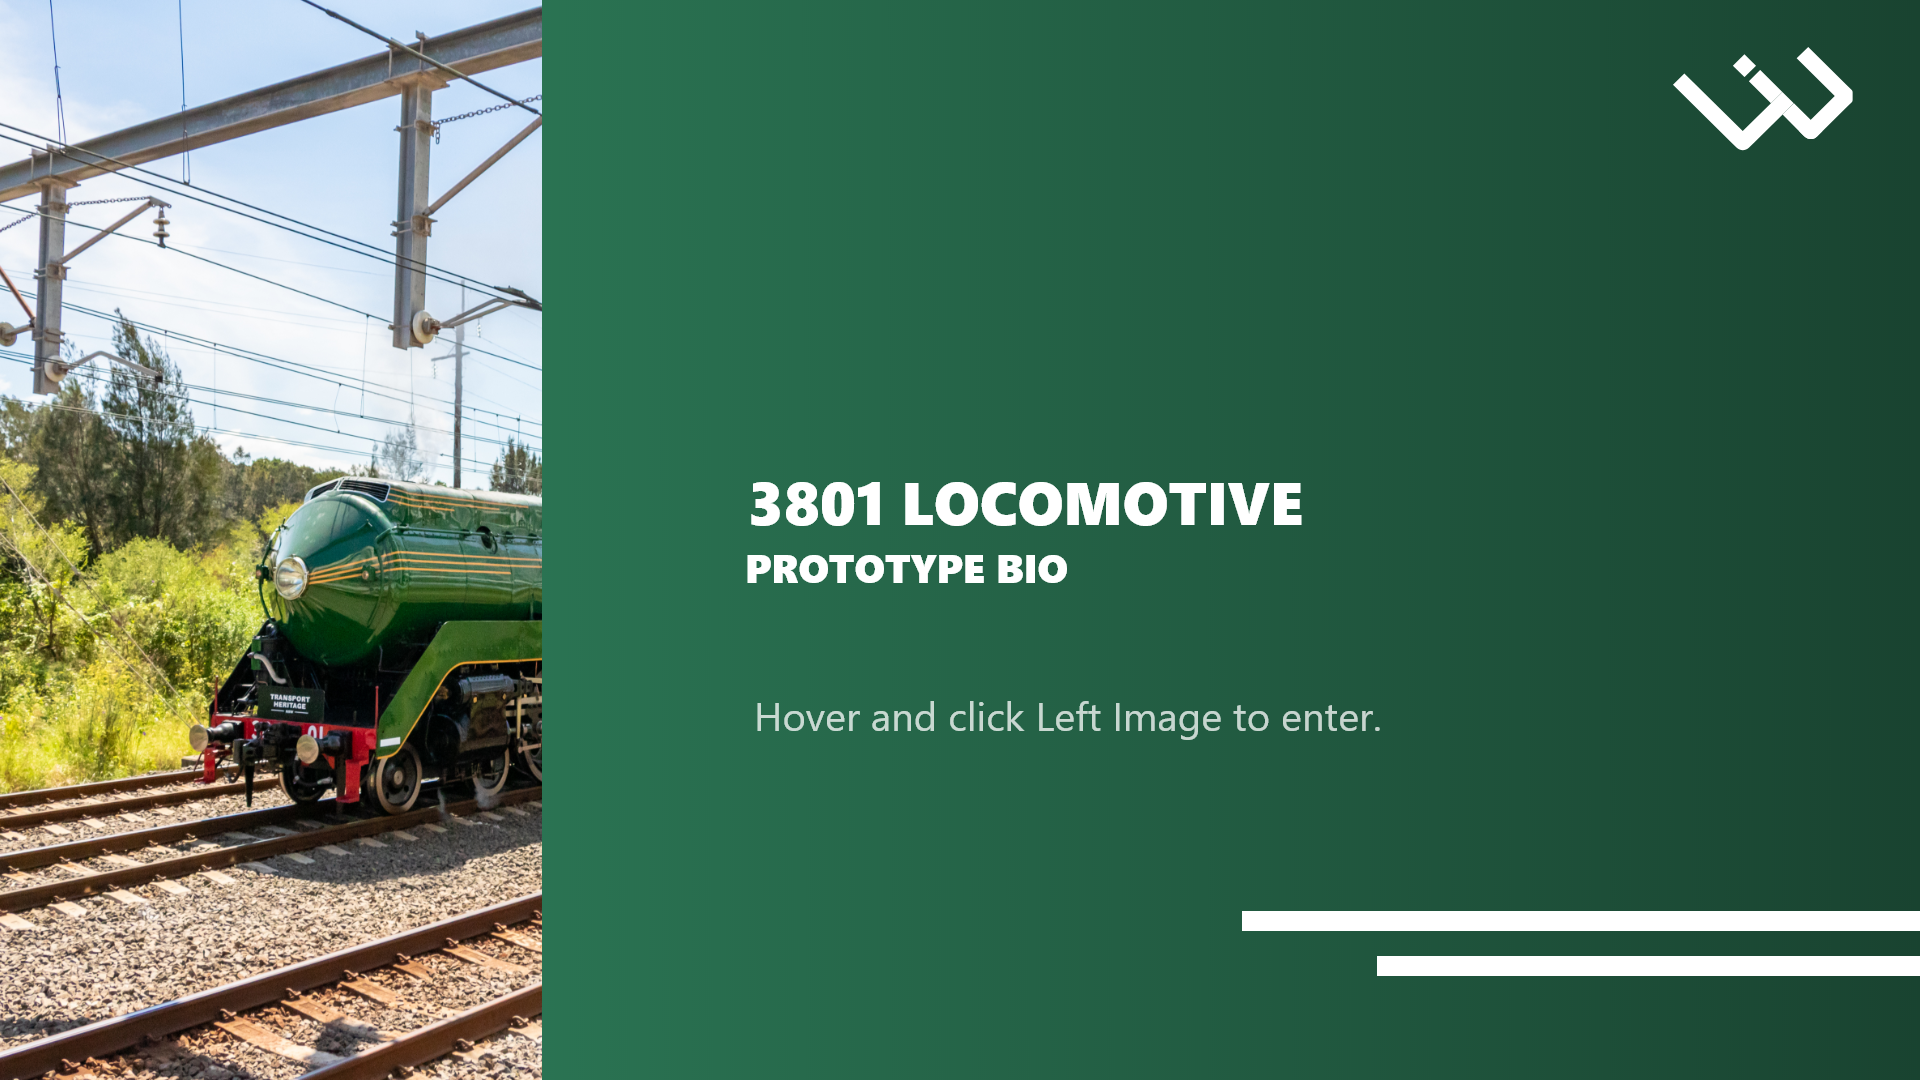 Image of 3801-locomotive-prototype-bio